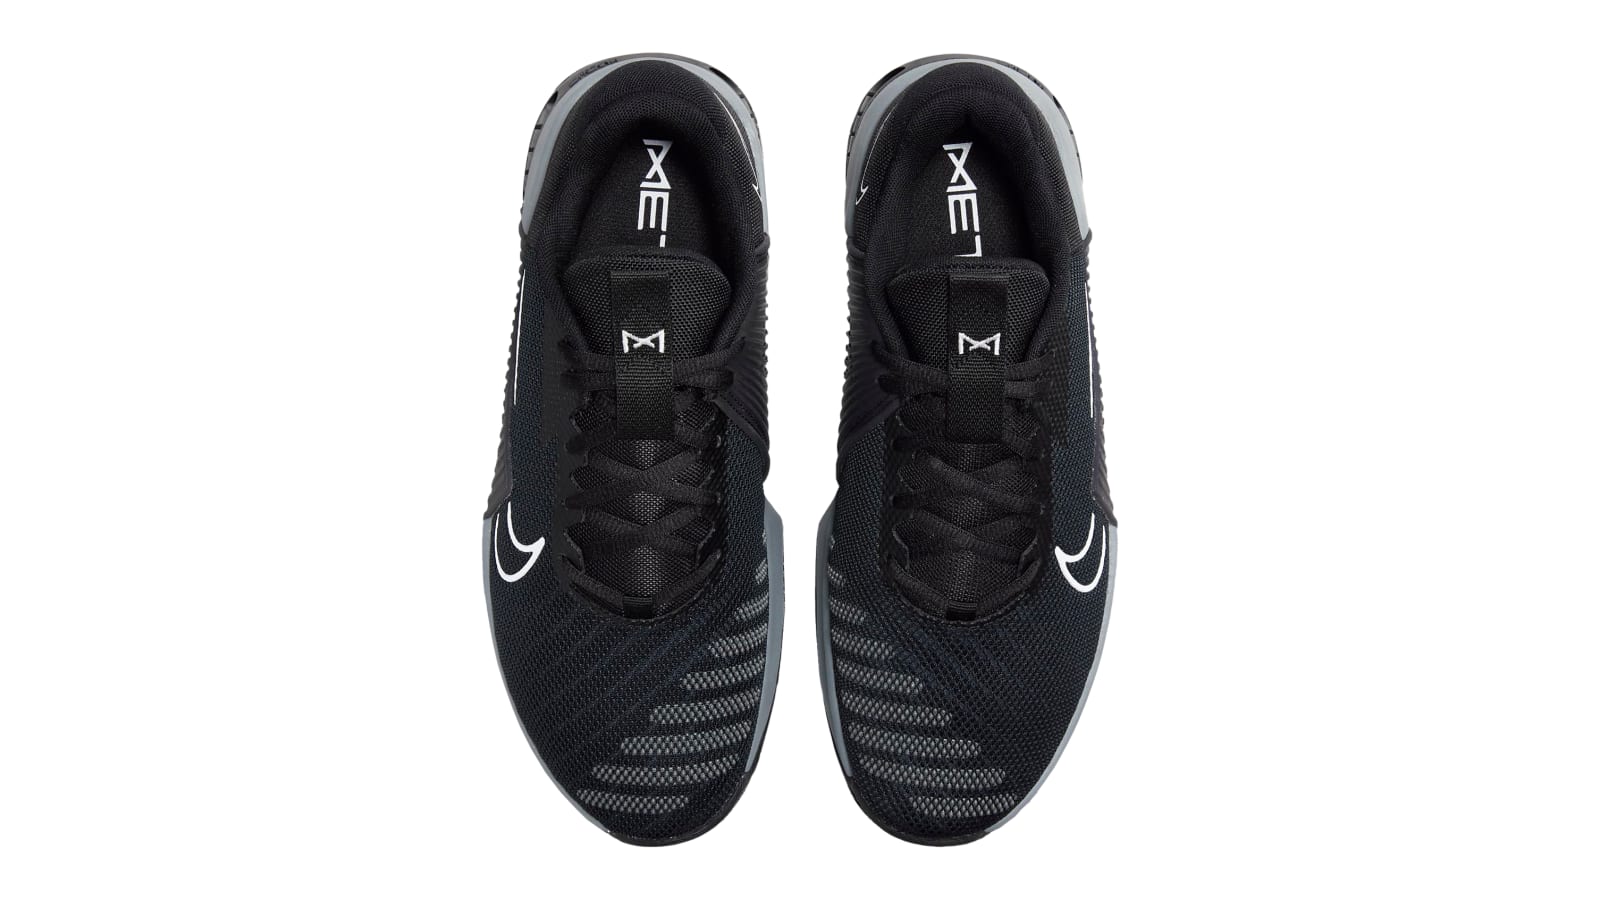 Nike Metcon 9 - Men's - Black / Anthracite / Smoke Gray / White